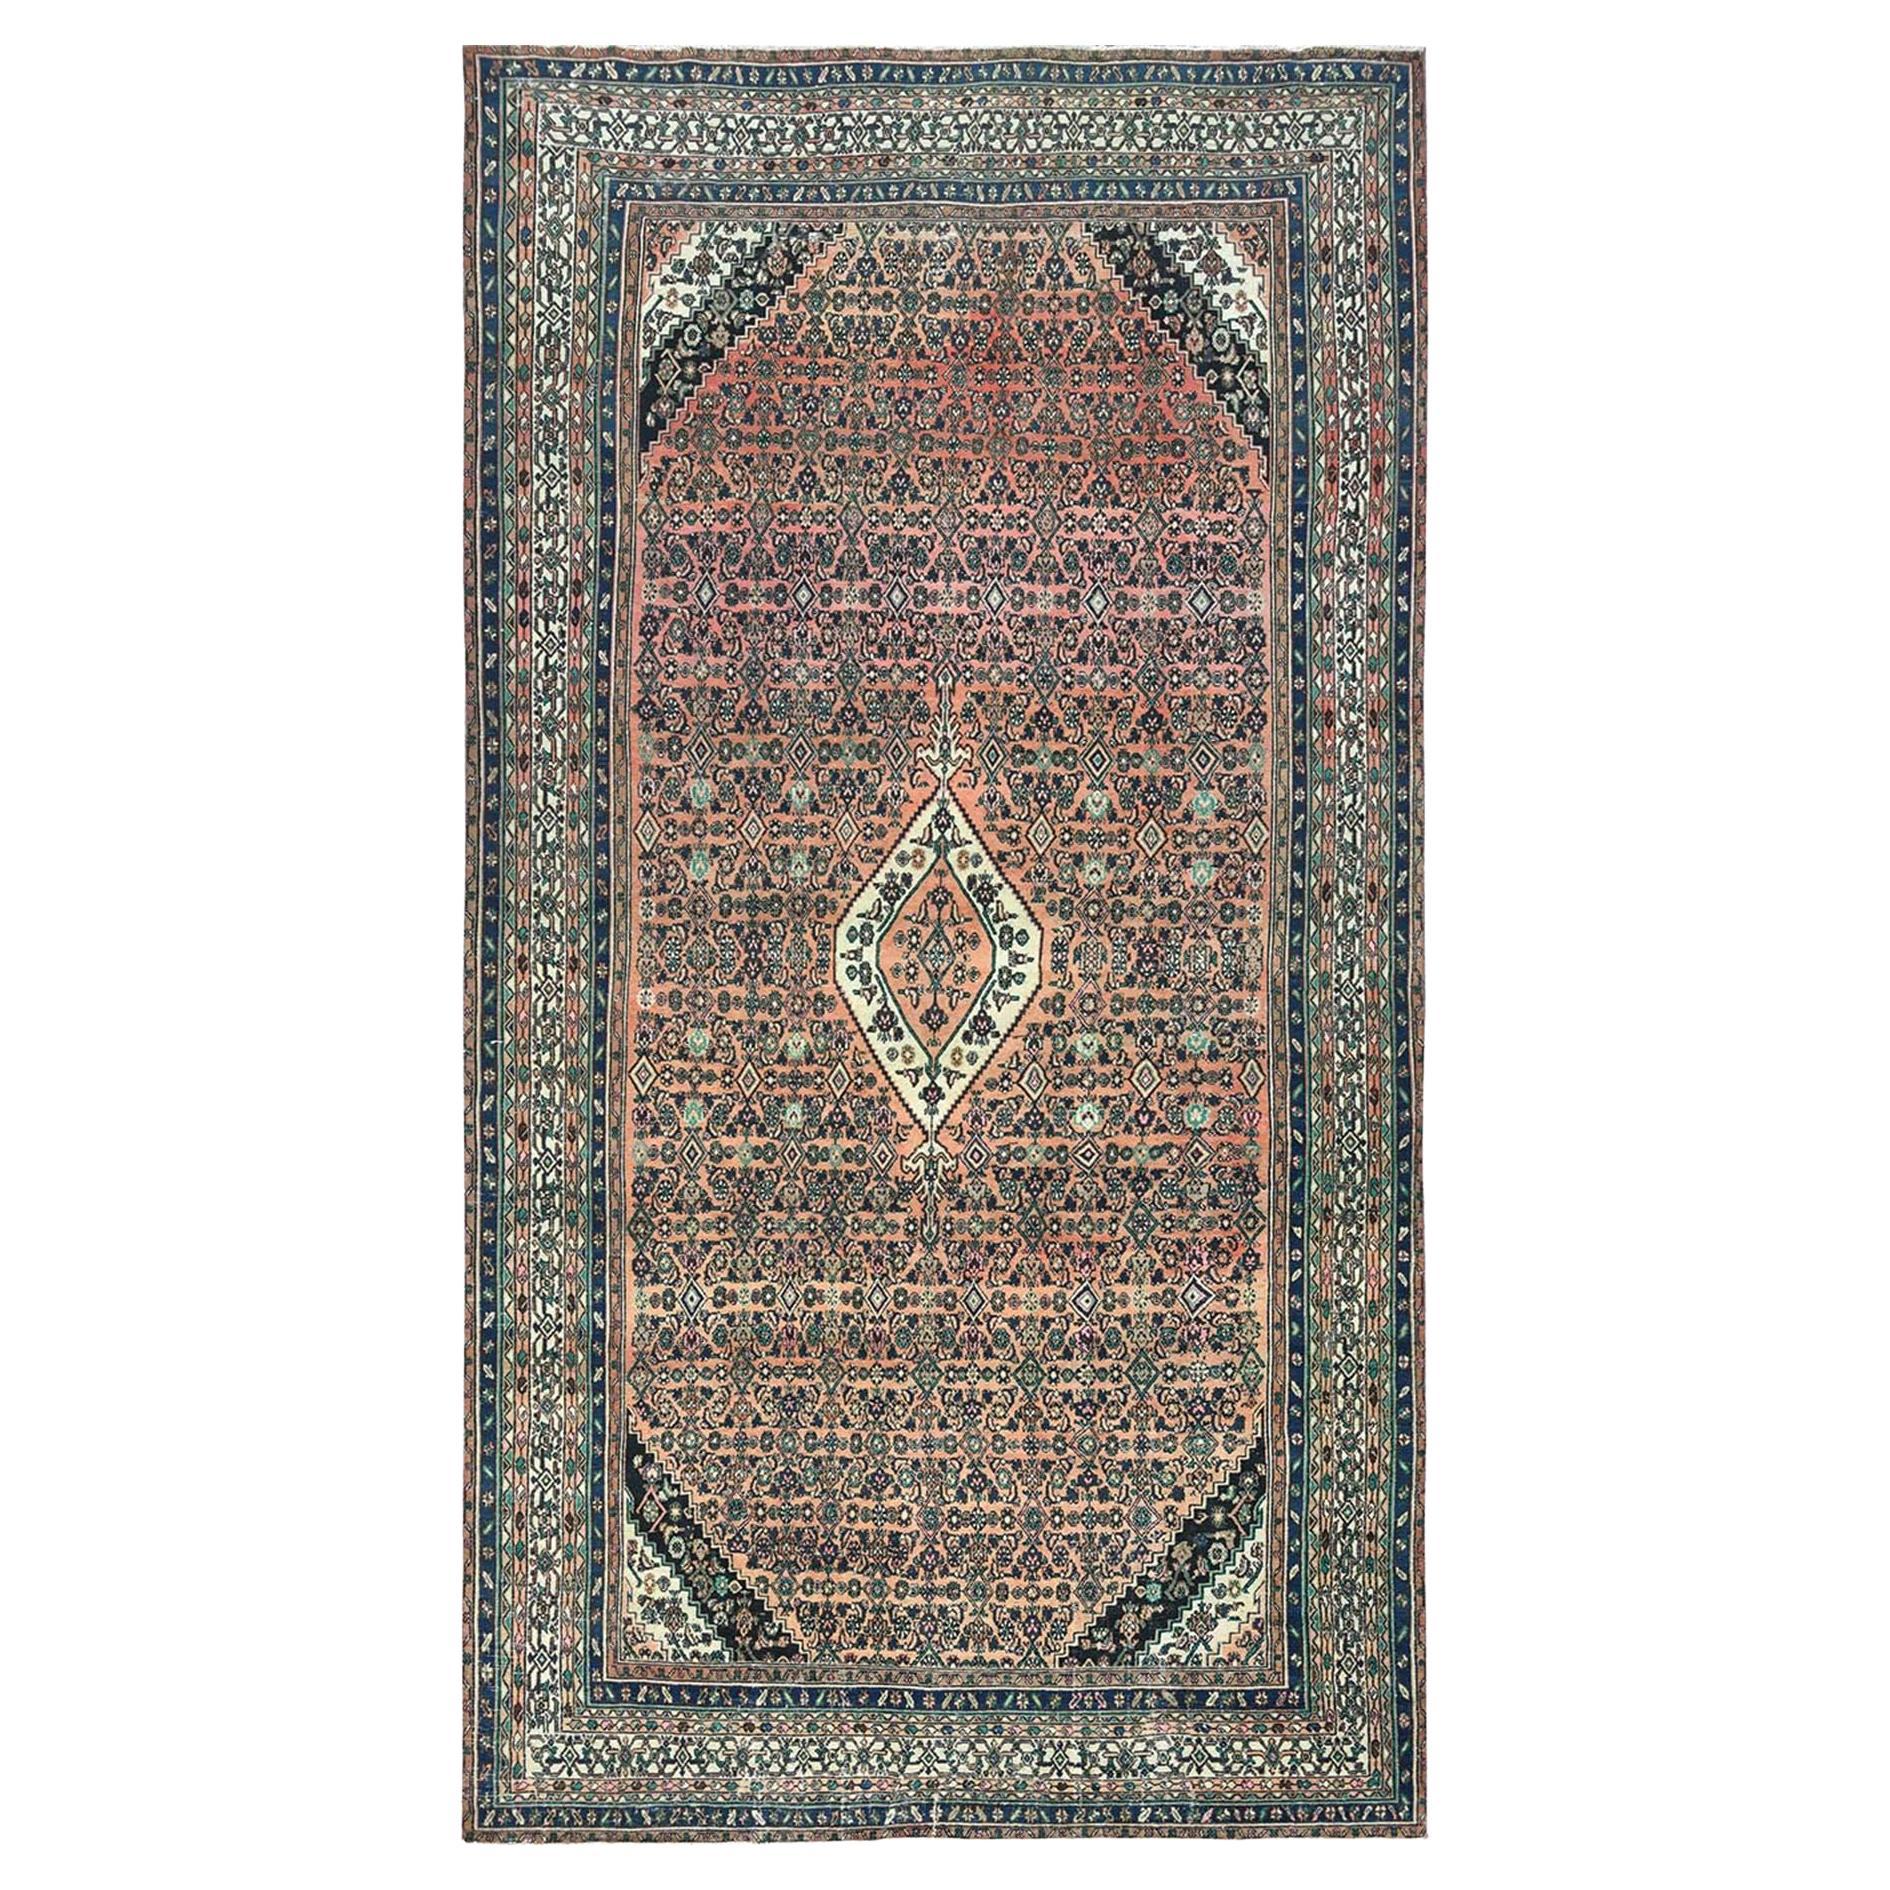 Handgeknüpfter, lachsfarbener, alter, persischer Bibikabad-Teppich aus reiner Wolle